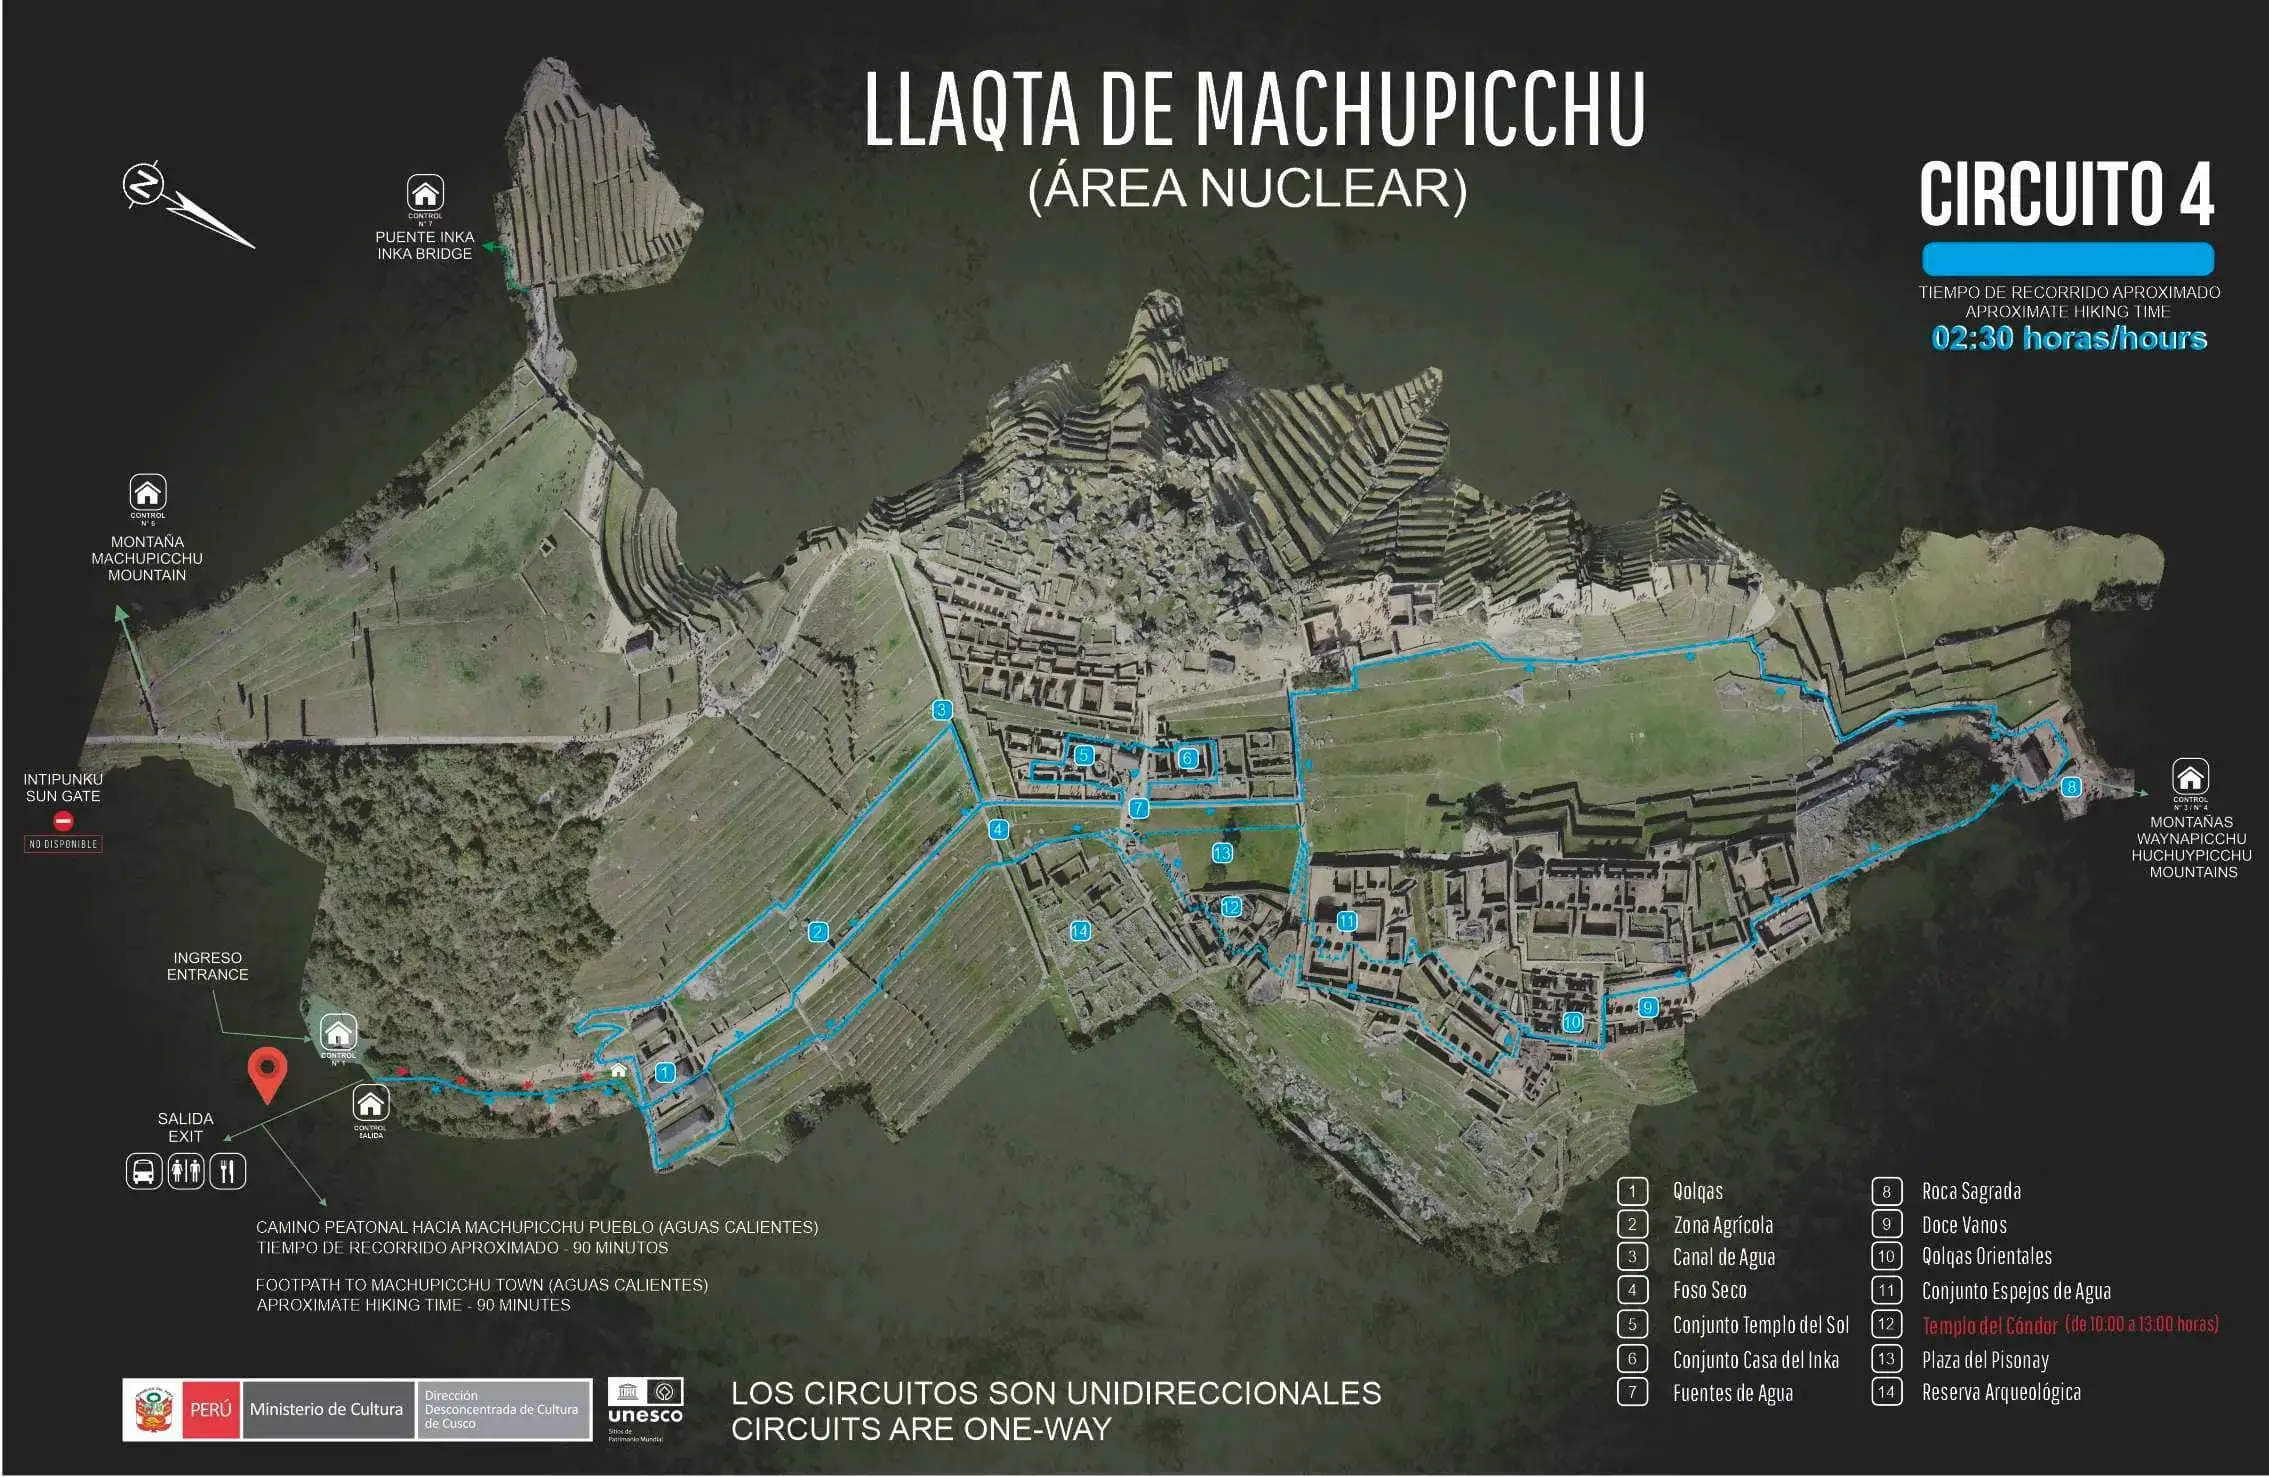 circuit 4 machu picchu - Inca Trail to Machu Picchu